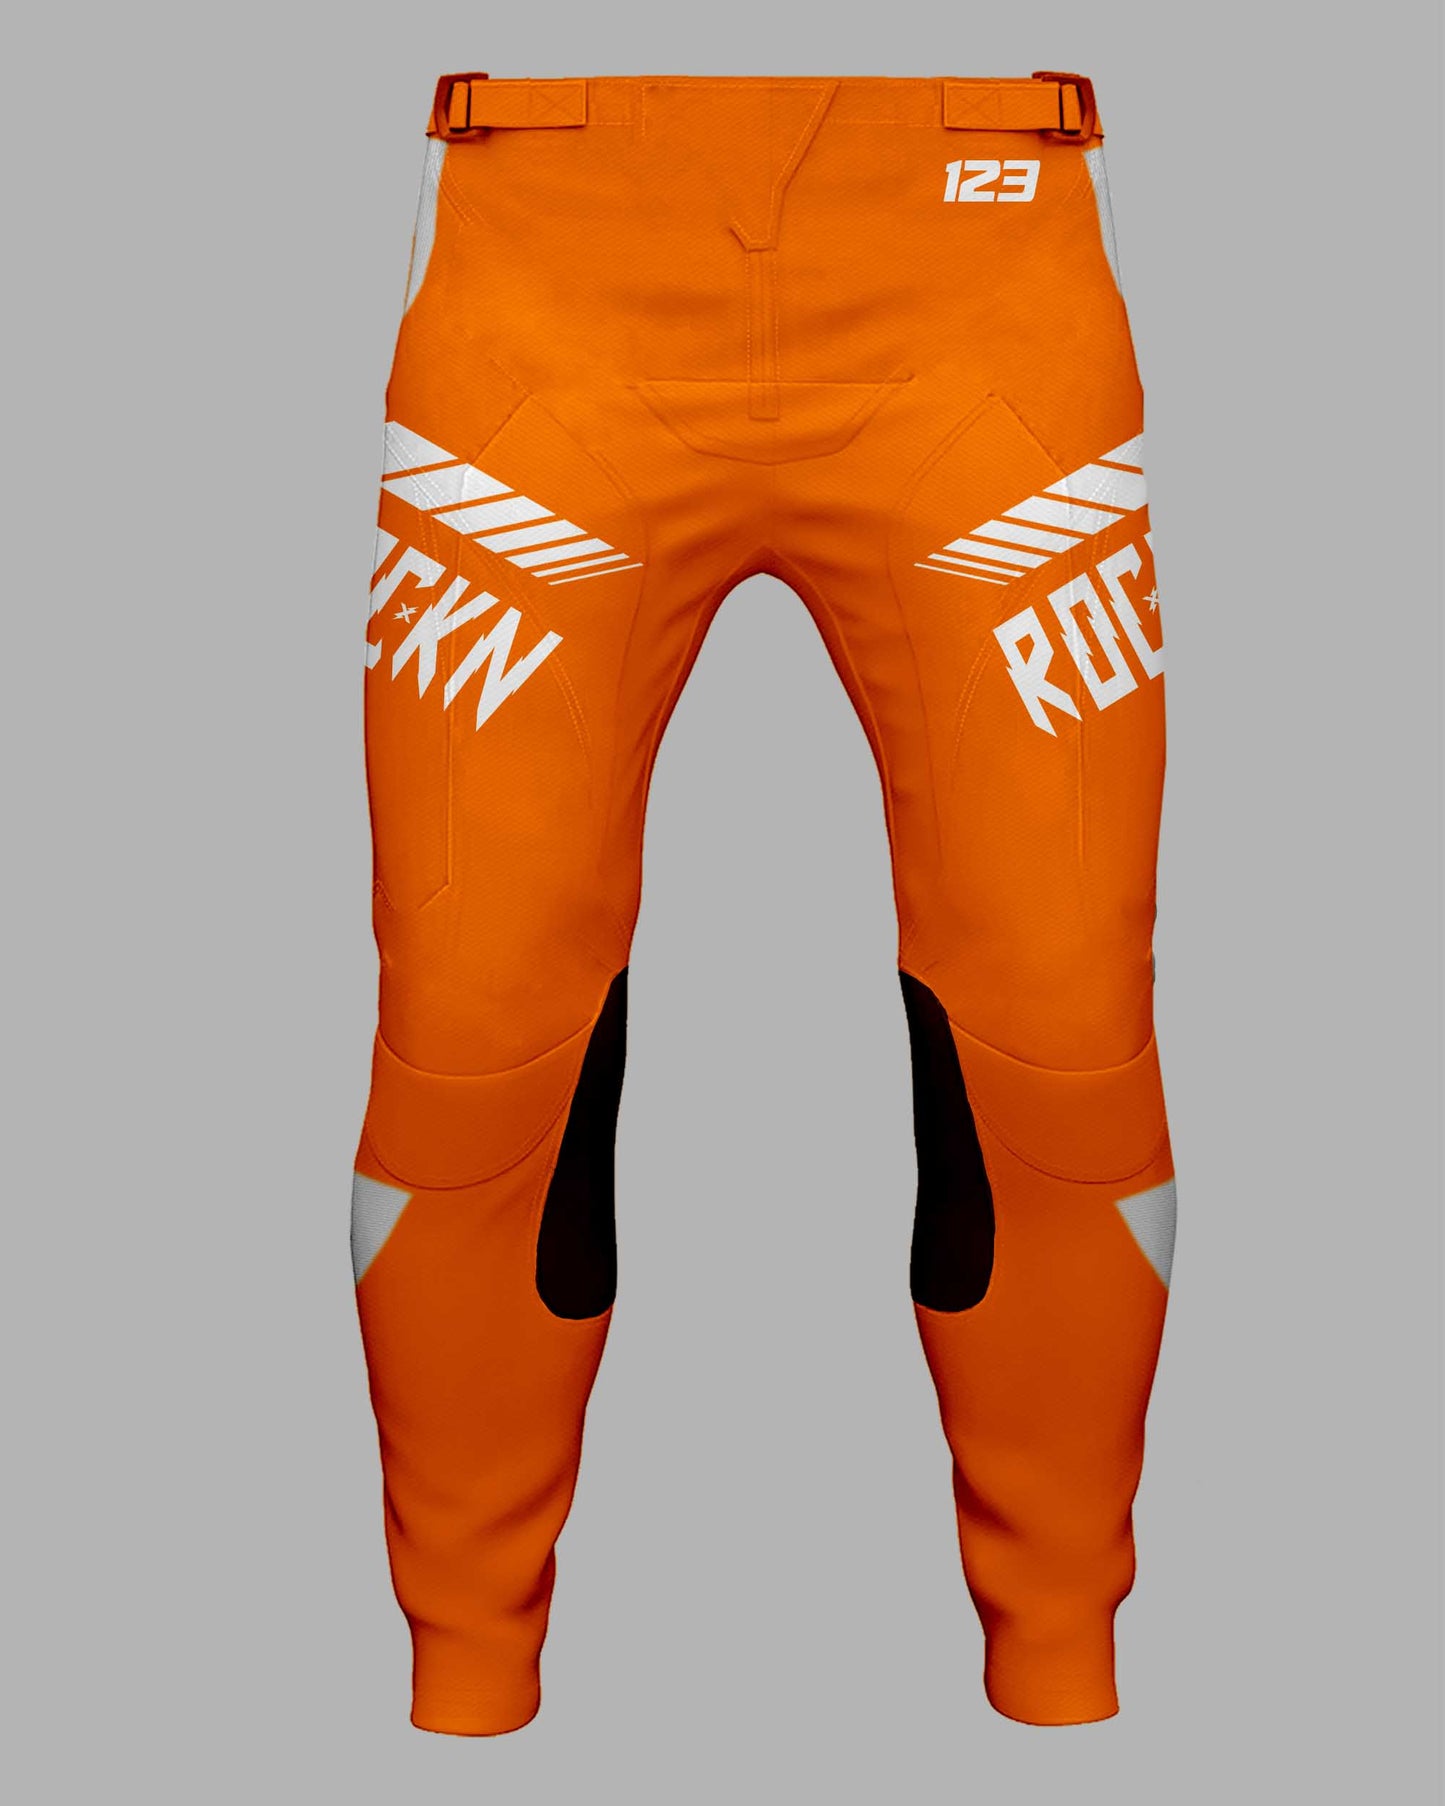 Elite Pants Speed Lines orange - FREE Custom Sublimation